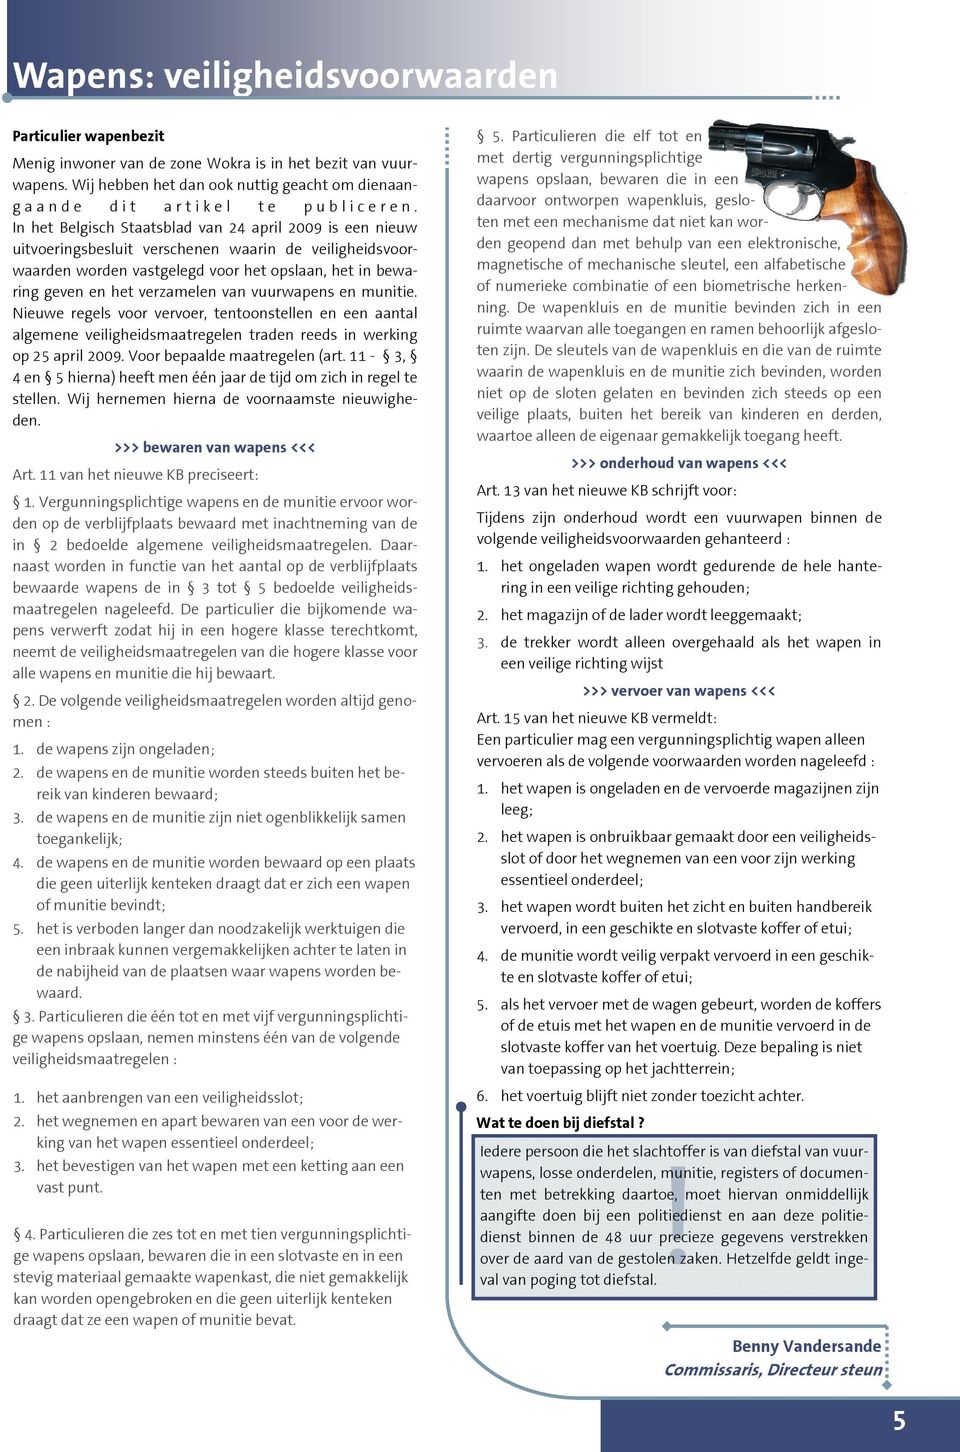 In het Belgisch Staatsblad van 24 april 2009 is een nieuw uitvoeringsbesluit verschenen waarin de veiligheidsvoorwaarden worden vastgelegd voor het opslaan, het in bewaring geven en het verzamelen